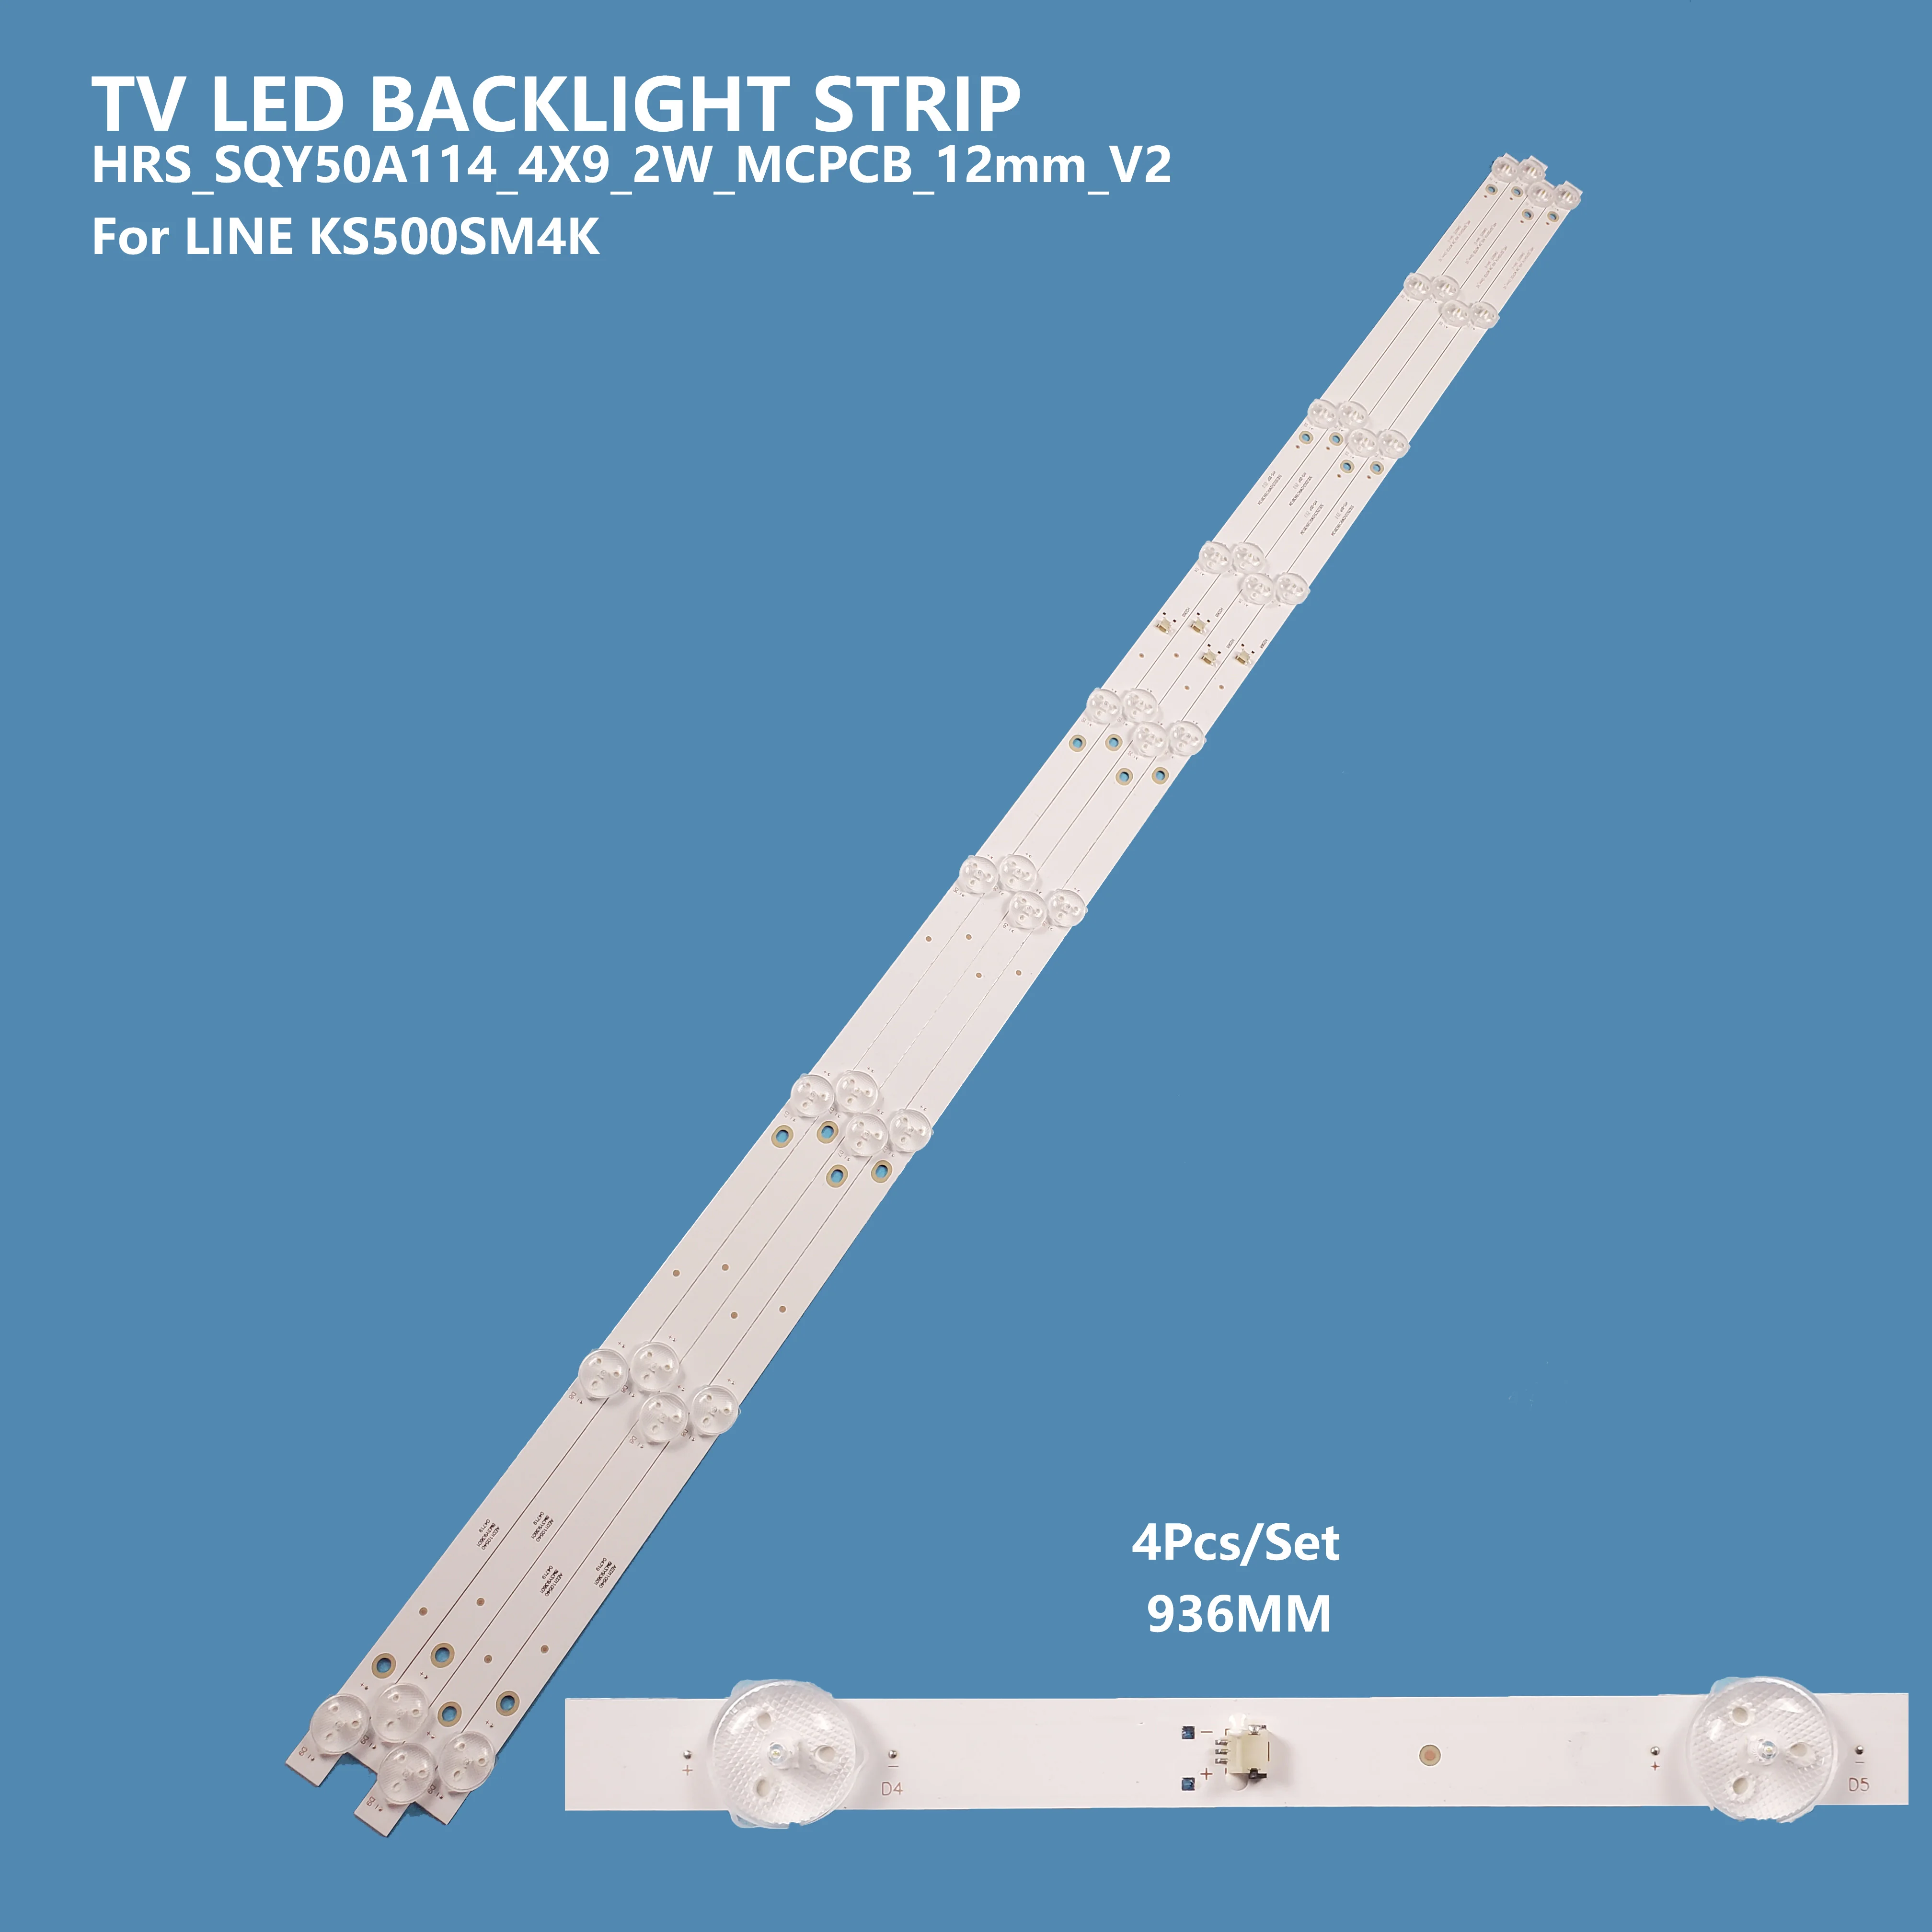 4PCS/set Led TV Backlight Strip HRS_SQY50A114_4X9_2W_MCPCB_12mm_V2 For LINE KS500SM4K Bar Light Accessories 4pcs set tv led backlight bar strip un55nu7095g 4x9 2w mcpcb 14mm v0 ic b vzaa55db05 crh bp55303004097ct for samsung un55nu7095g